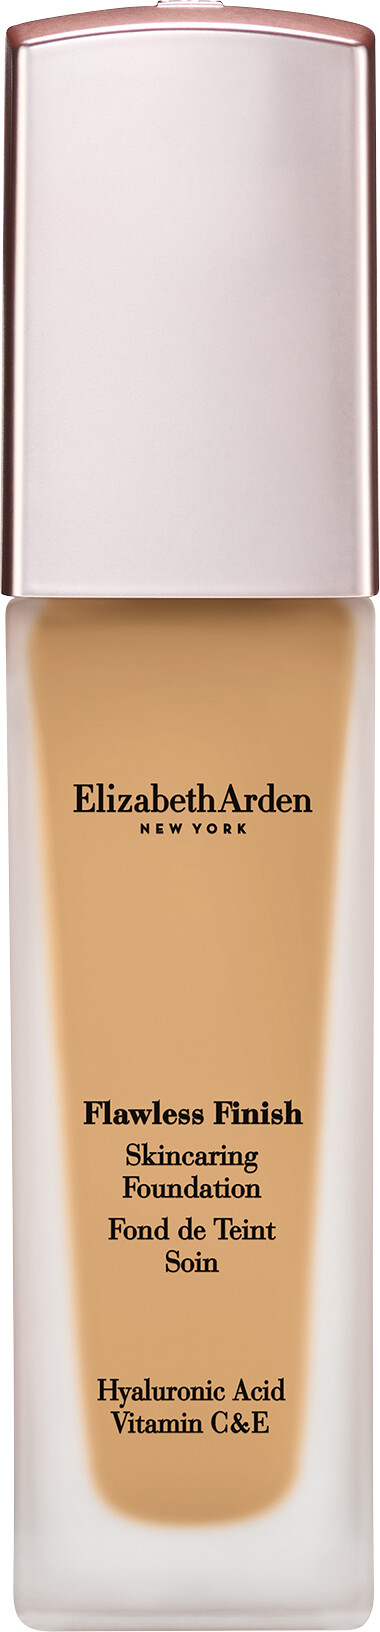 Elizabeth Arden Flawless Finish Skincaring Foundation 30ml 200N